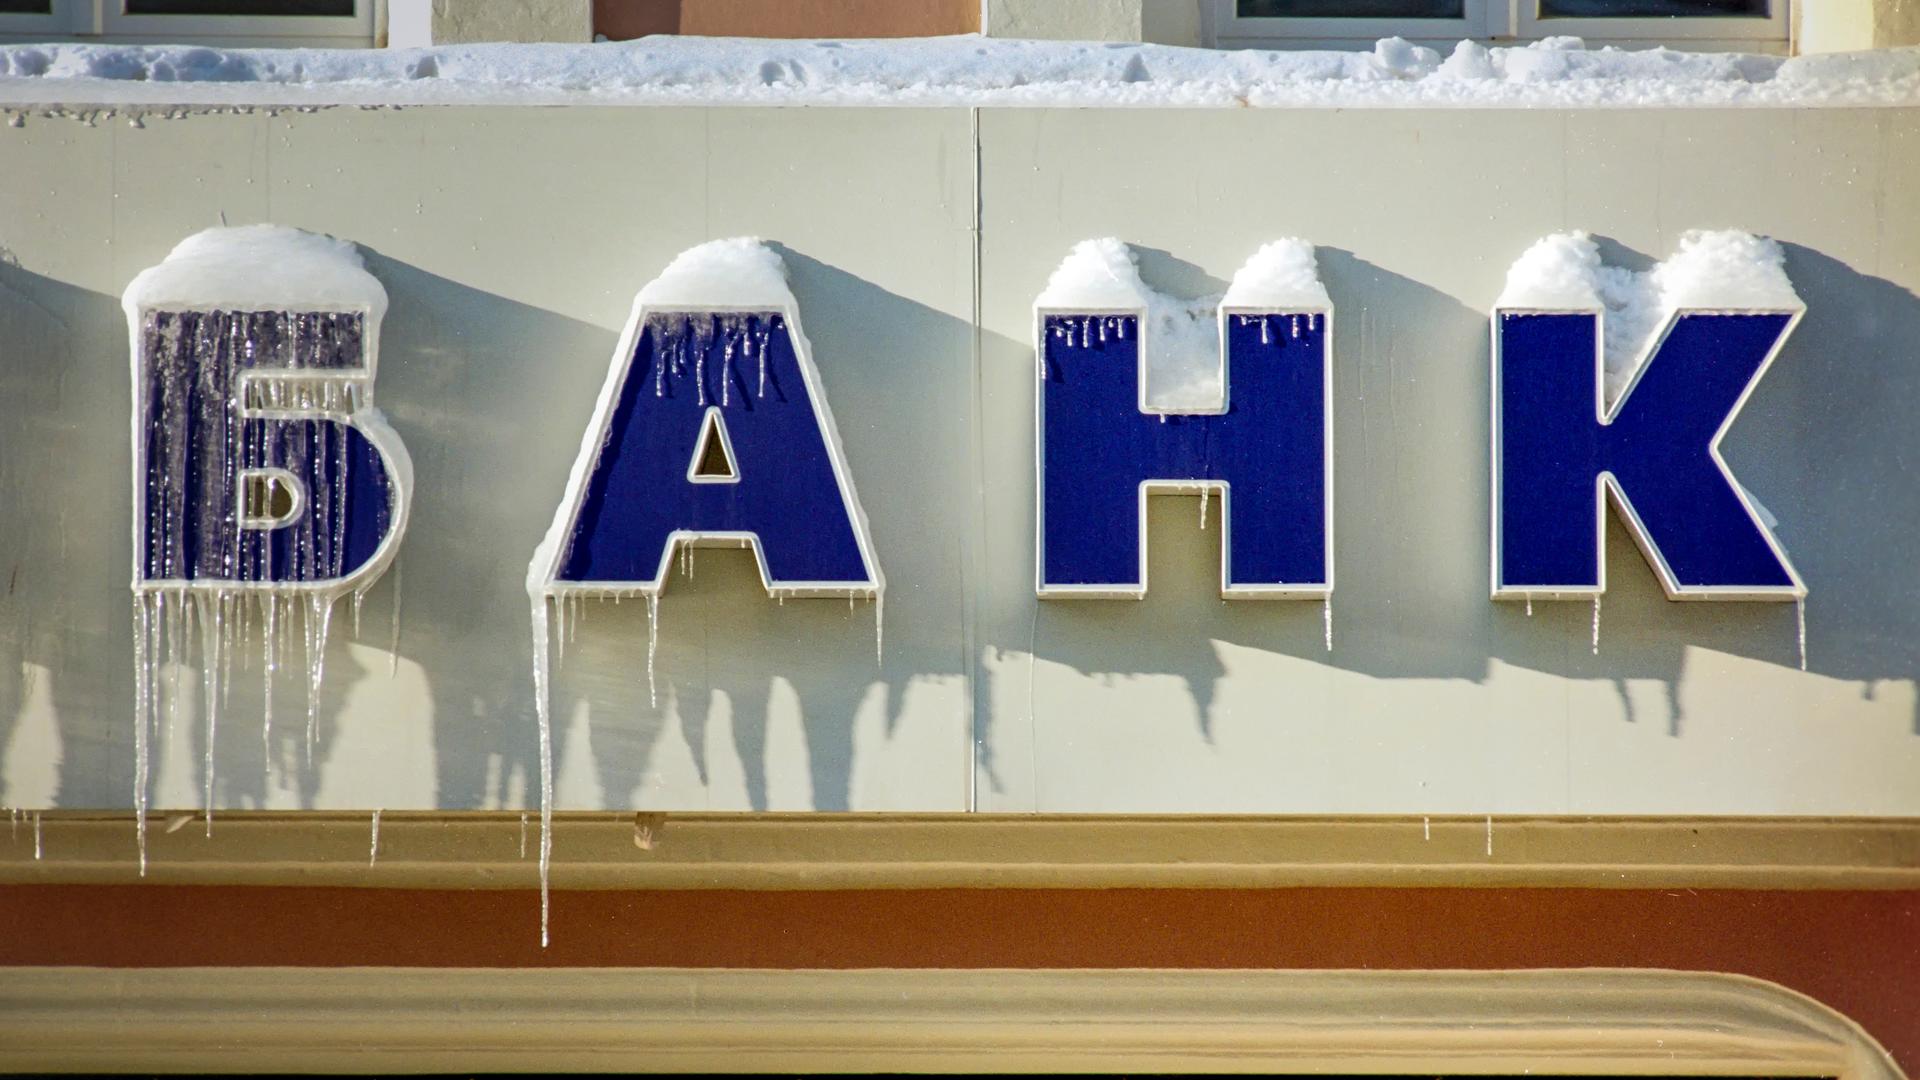 Das kyrillische Wort für "Bank" an einem Geldinstitut in Moskau. Der Schriftzug ist eingefroren und es hängen Eiszapfen hinunter.